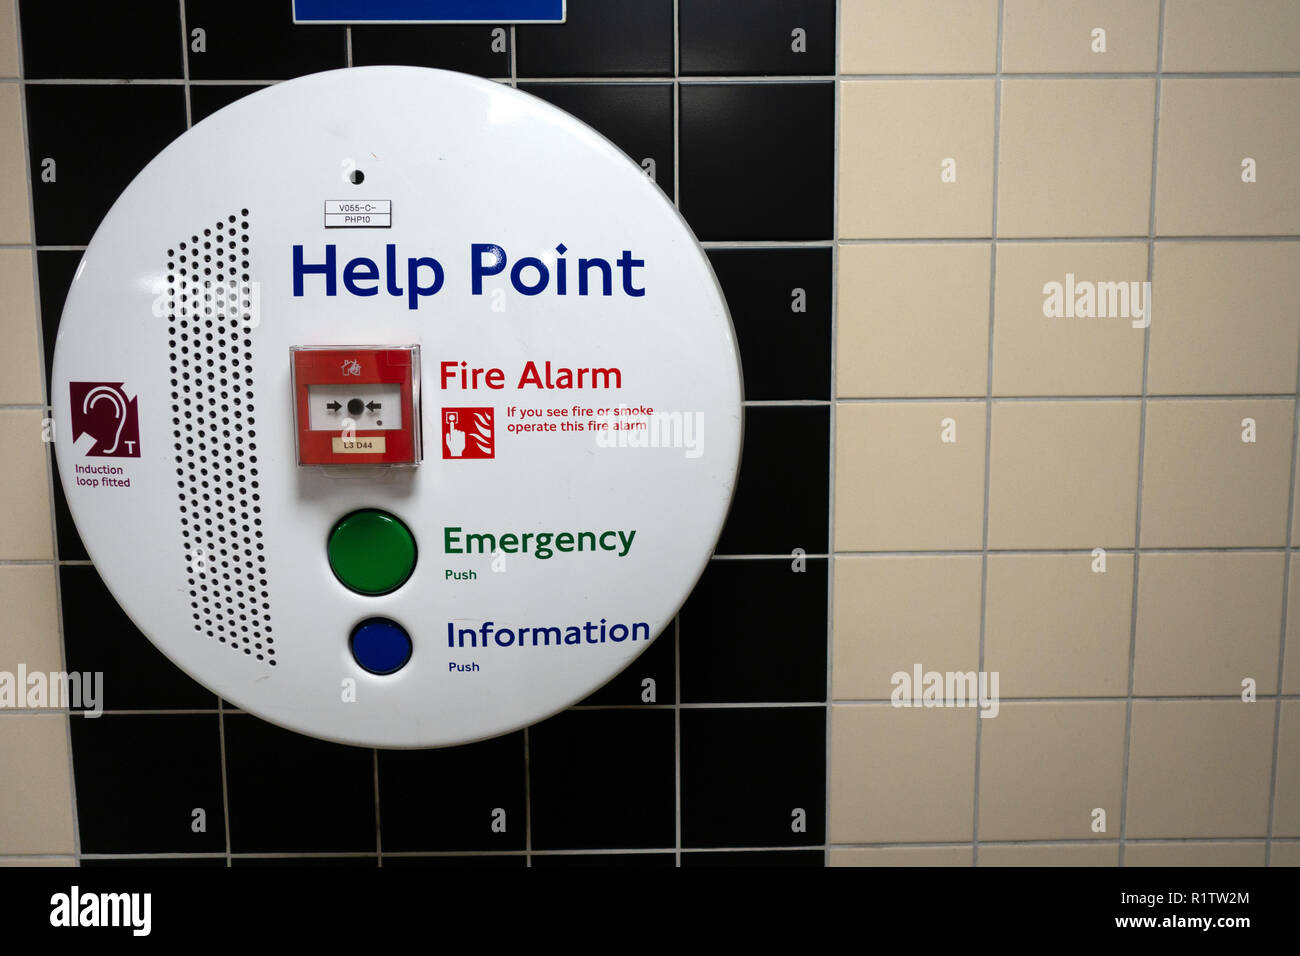 Hilfe Punkte an Londons U-Bahn Stationen Stockfoto